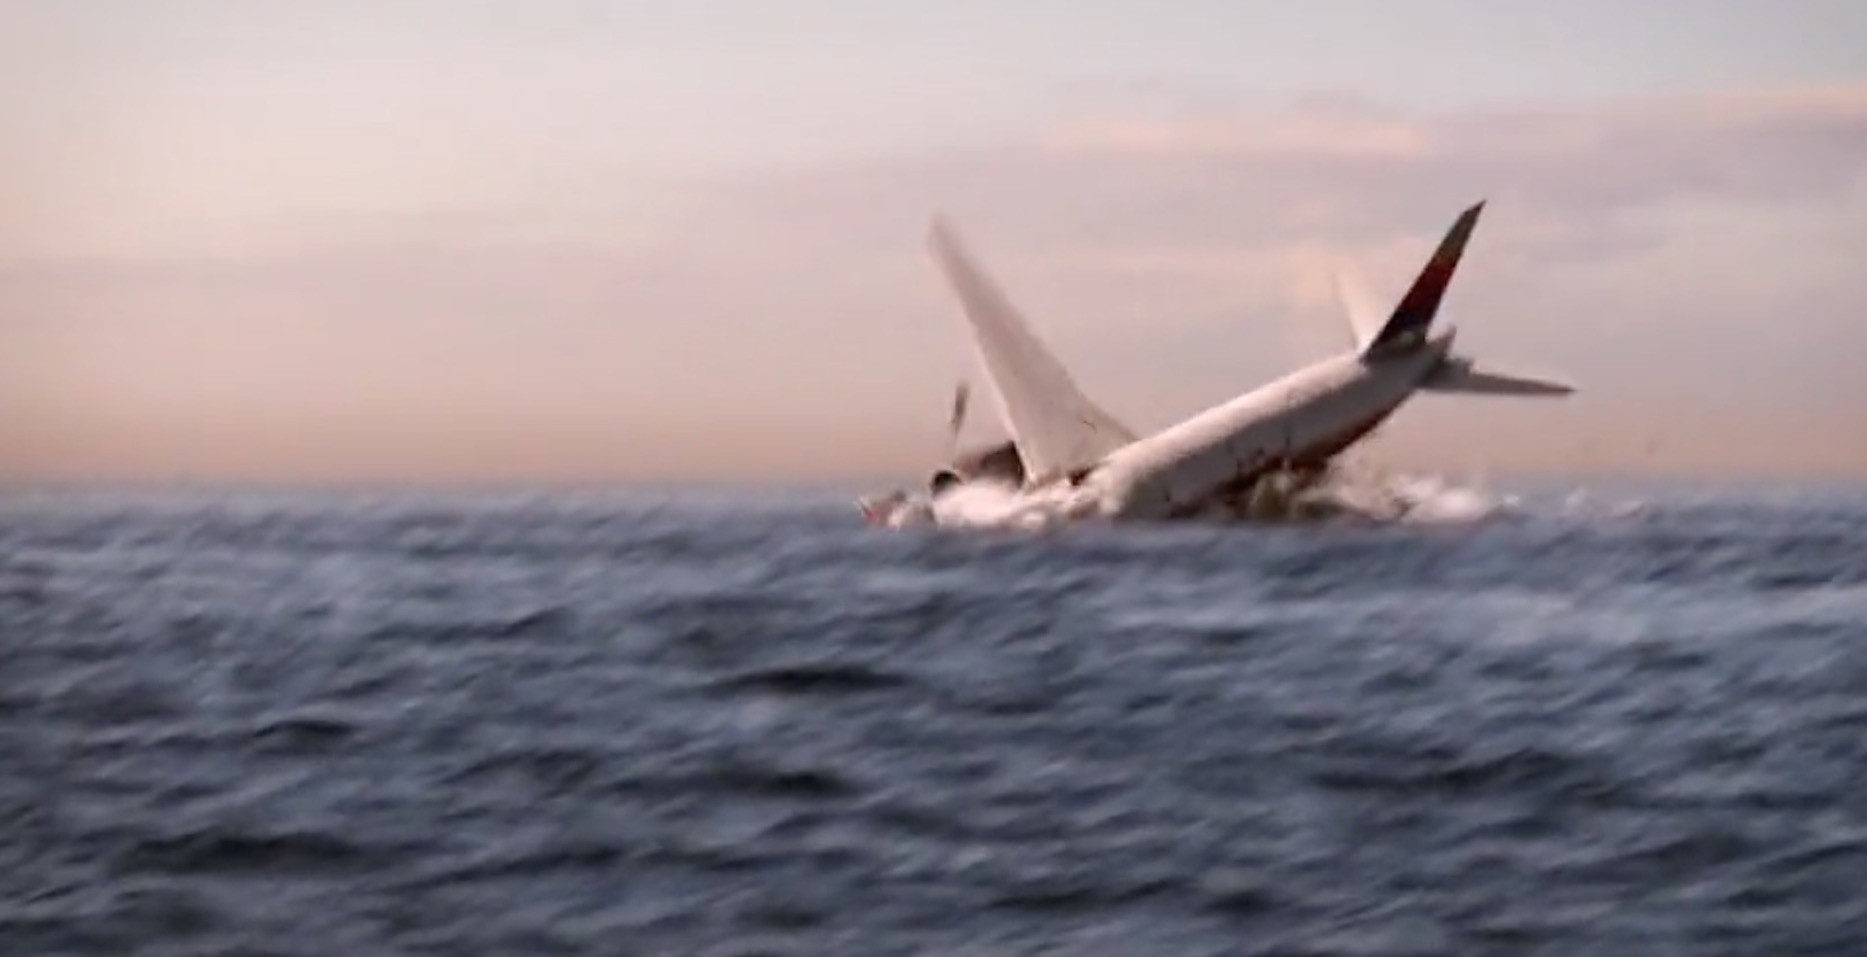 Έτσι χάθηκε το μπόινγκ της Malaysia Airlines: Οι τελευταίες στιγμές [Βίντεο]